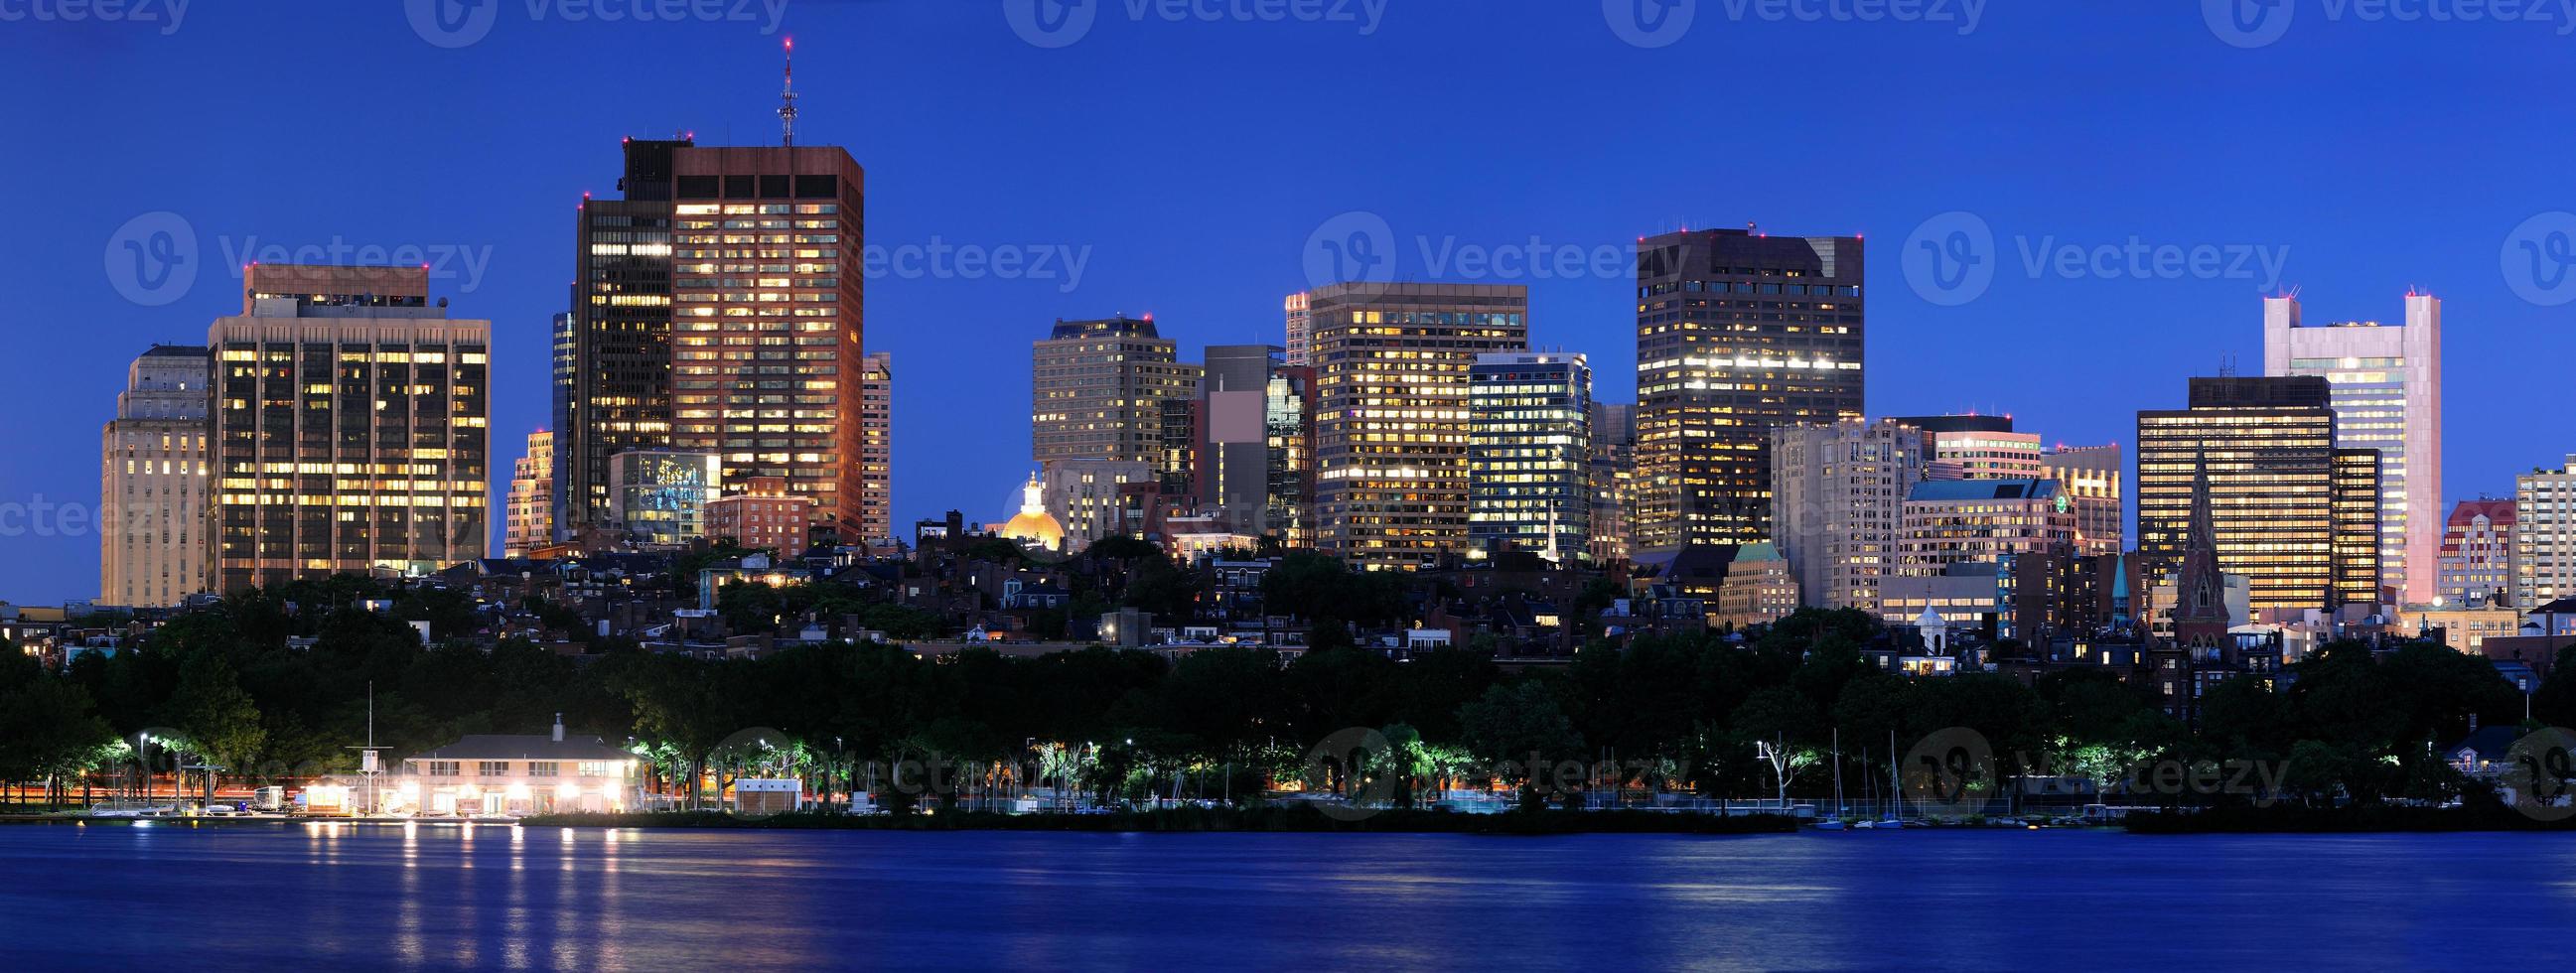 ville de boston la nuit photo